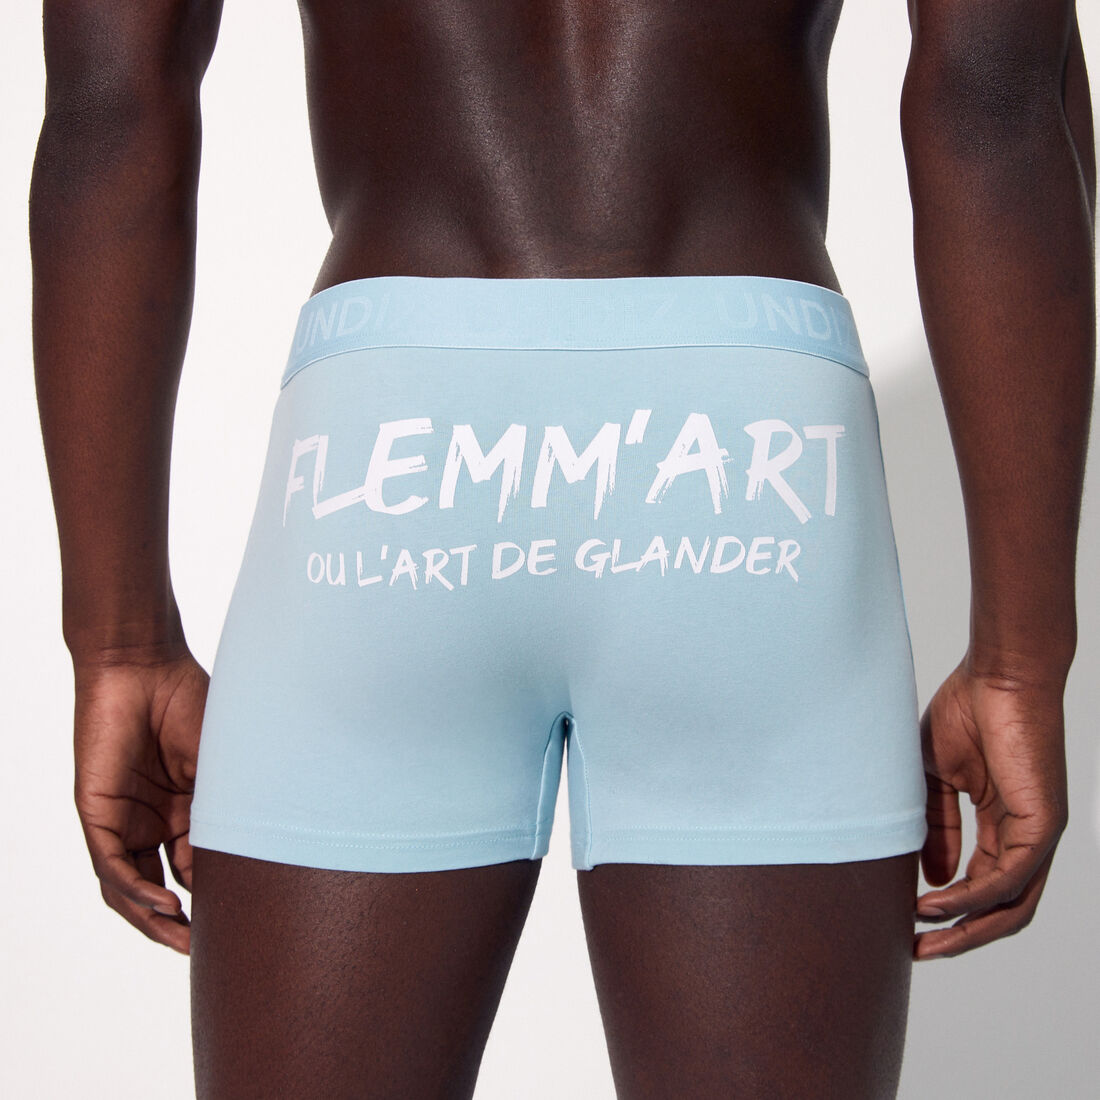 boxer shorts with the message "flemm'art ou l'art de glander";